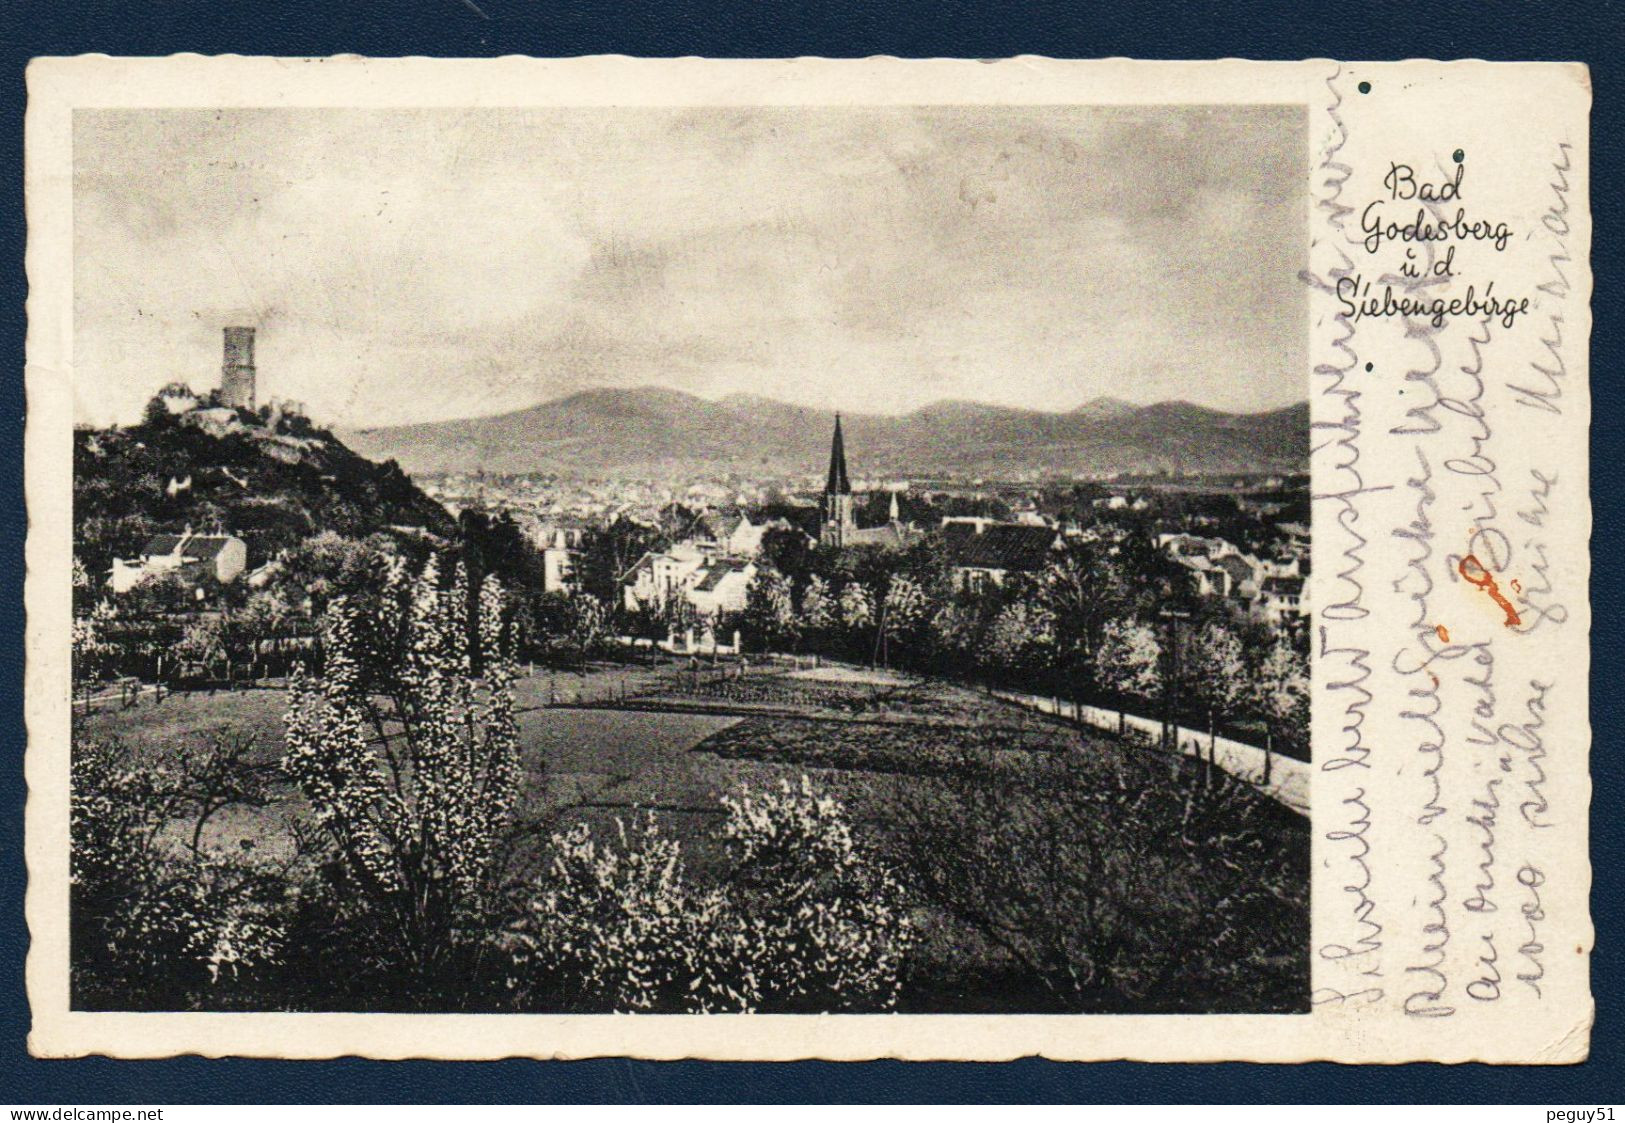 Allemagne. Bad Godesberg U.d.Siebengebirge. Ruines Du Château De Godesburg Et église Catholique Ste.Marie. 1936 - Bonn